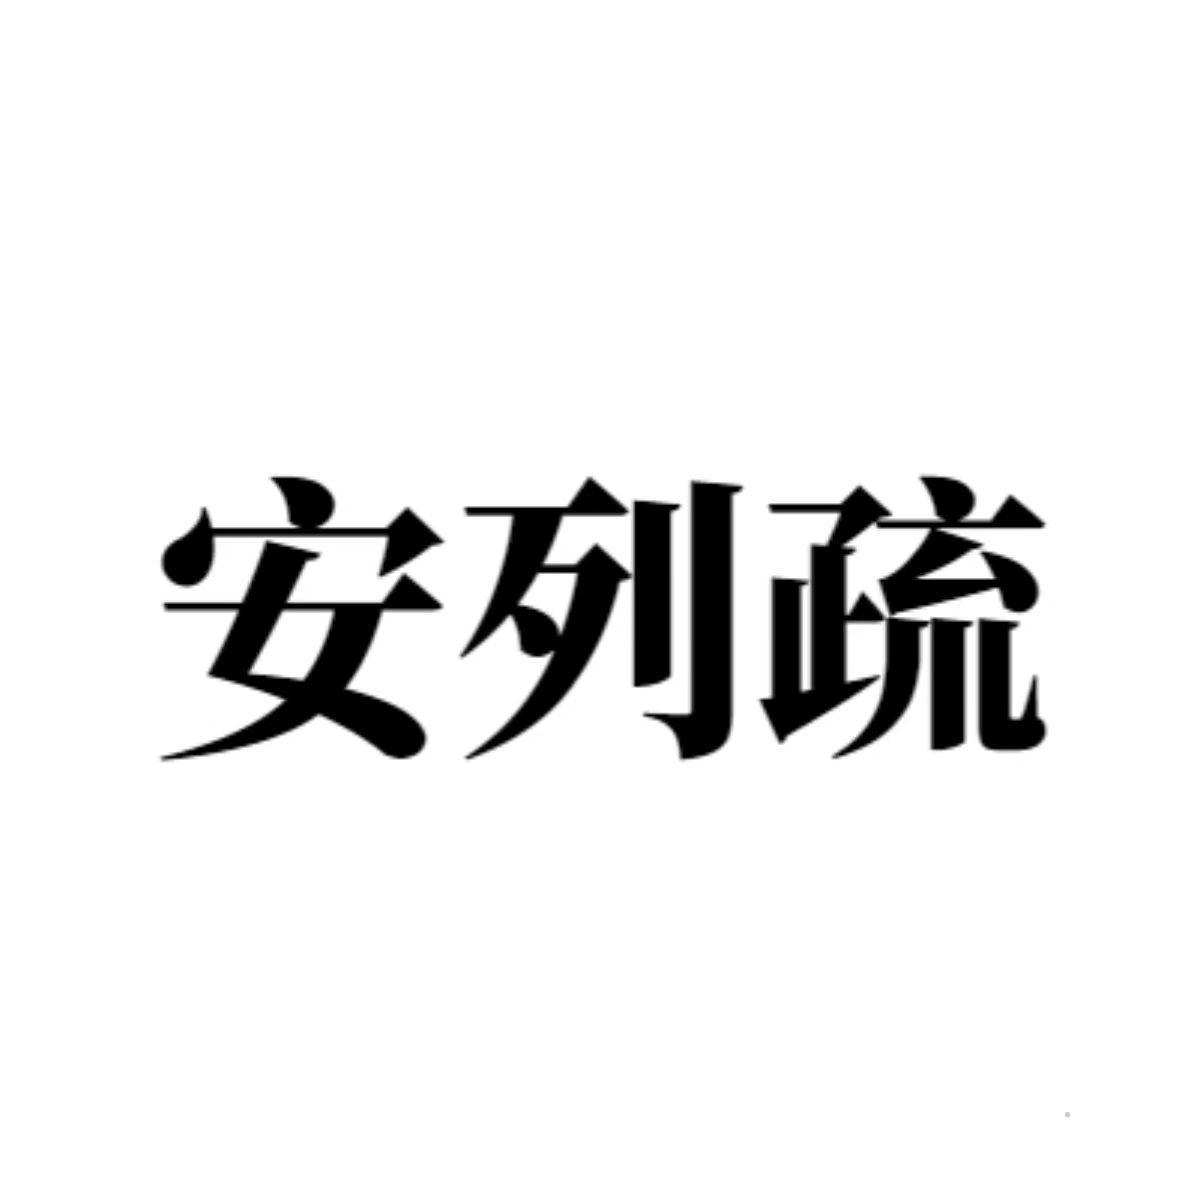 安列疏logo